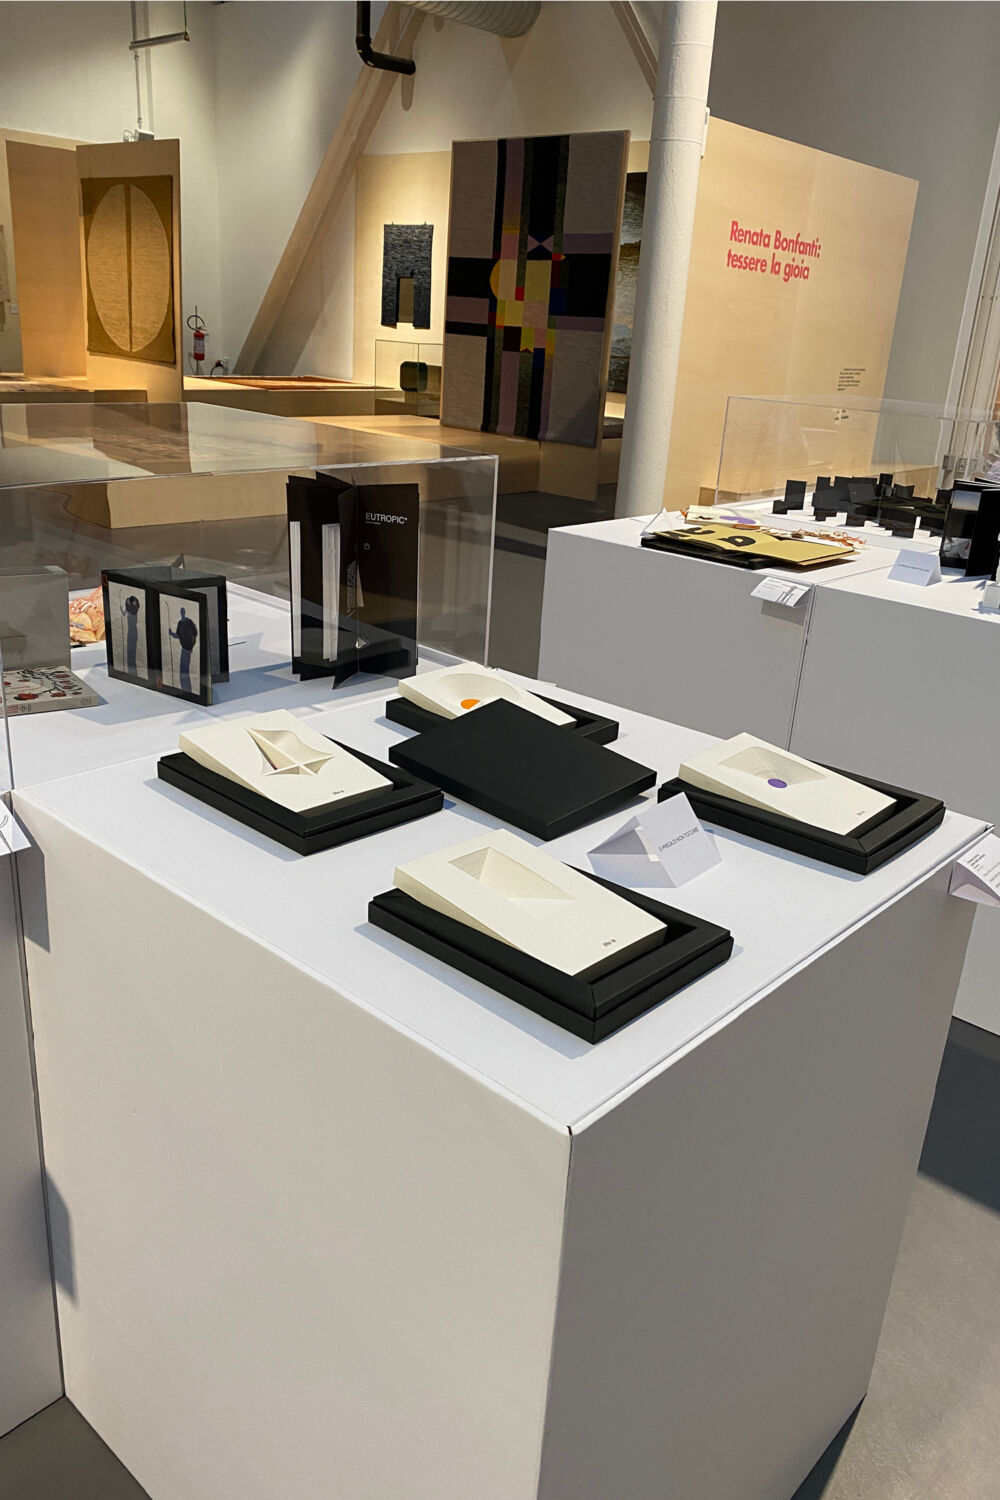 Artemia ADI Design Museum mostra Oggetto Libro